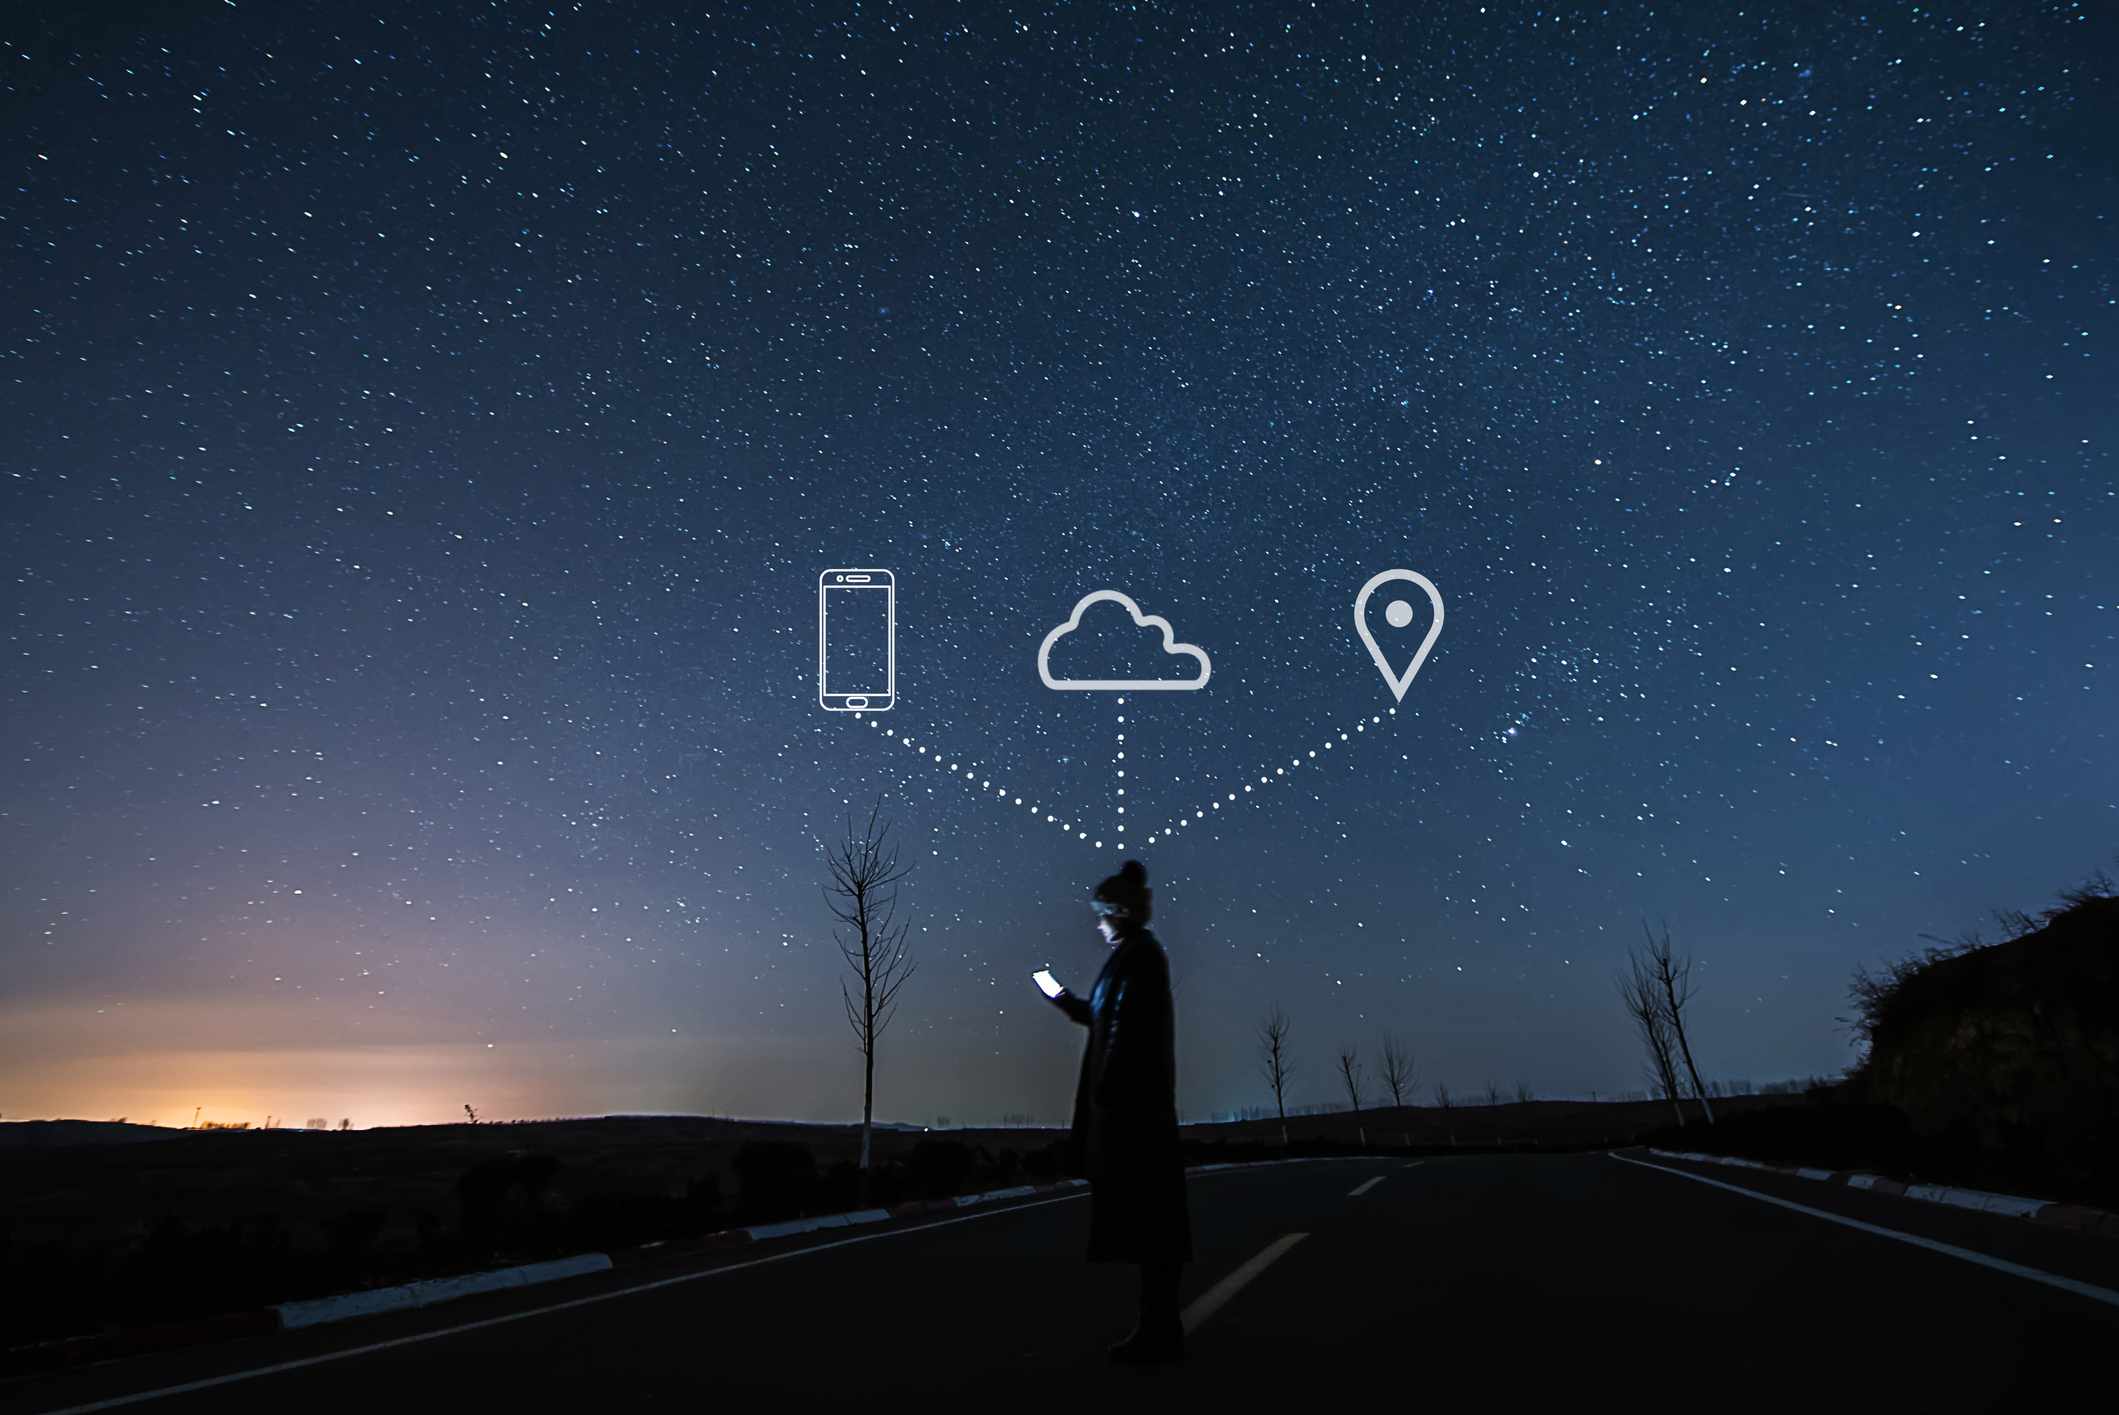 Někdo, kdo používá smartphone za hvězdné noci, s ikonami telefonu, cloudu a mapy na obloze výše.